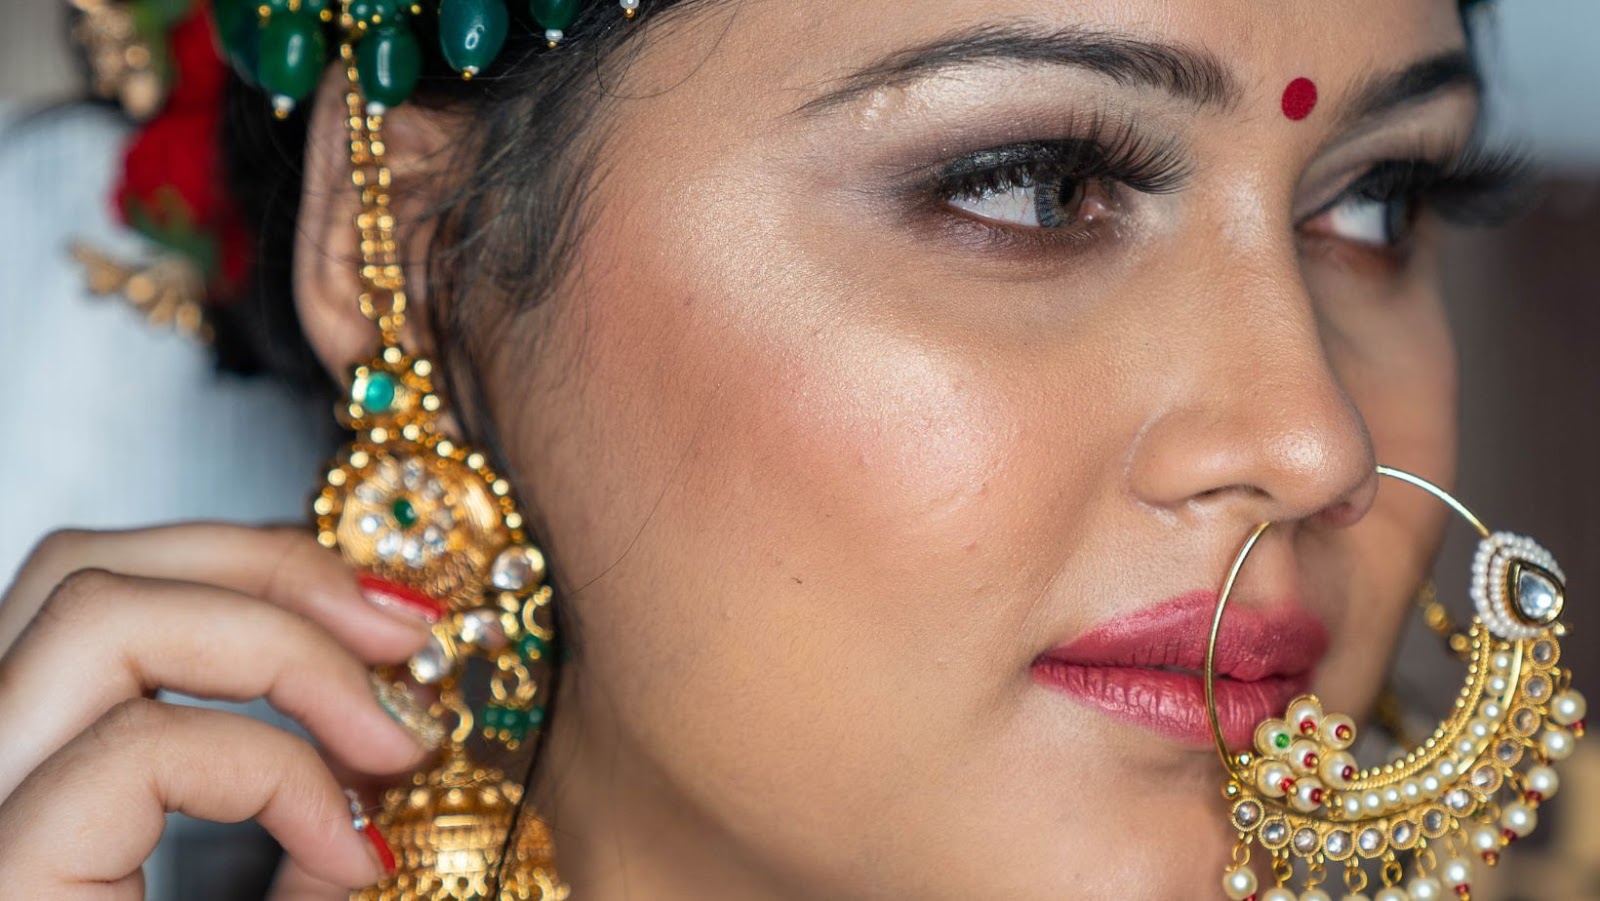 new love makeup indian makeup blog indian beauty blog indian fashion blog